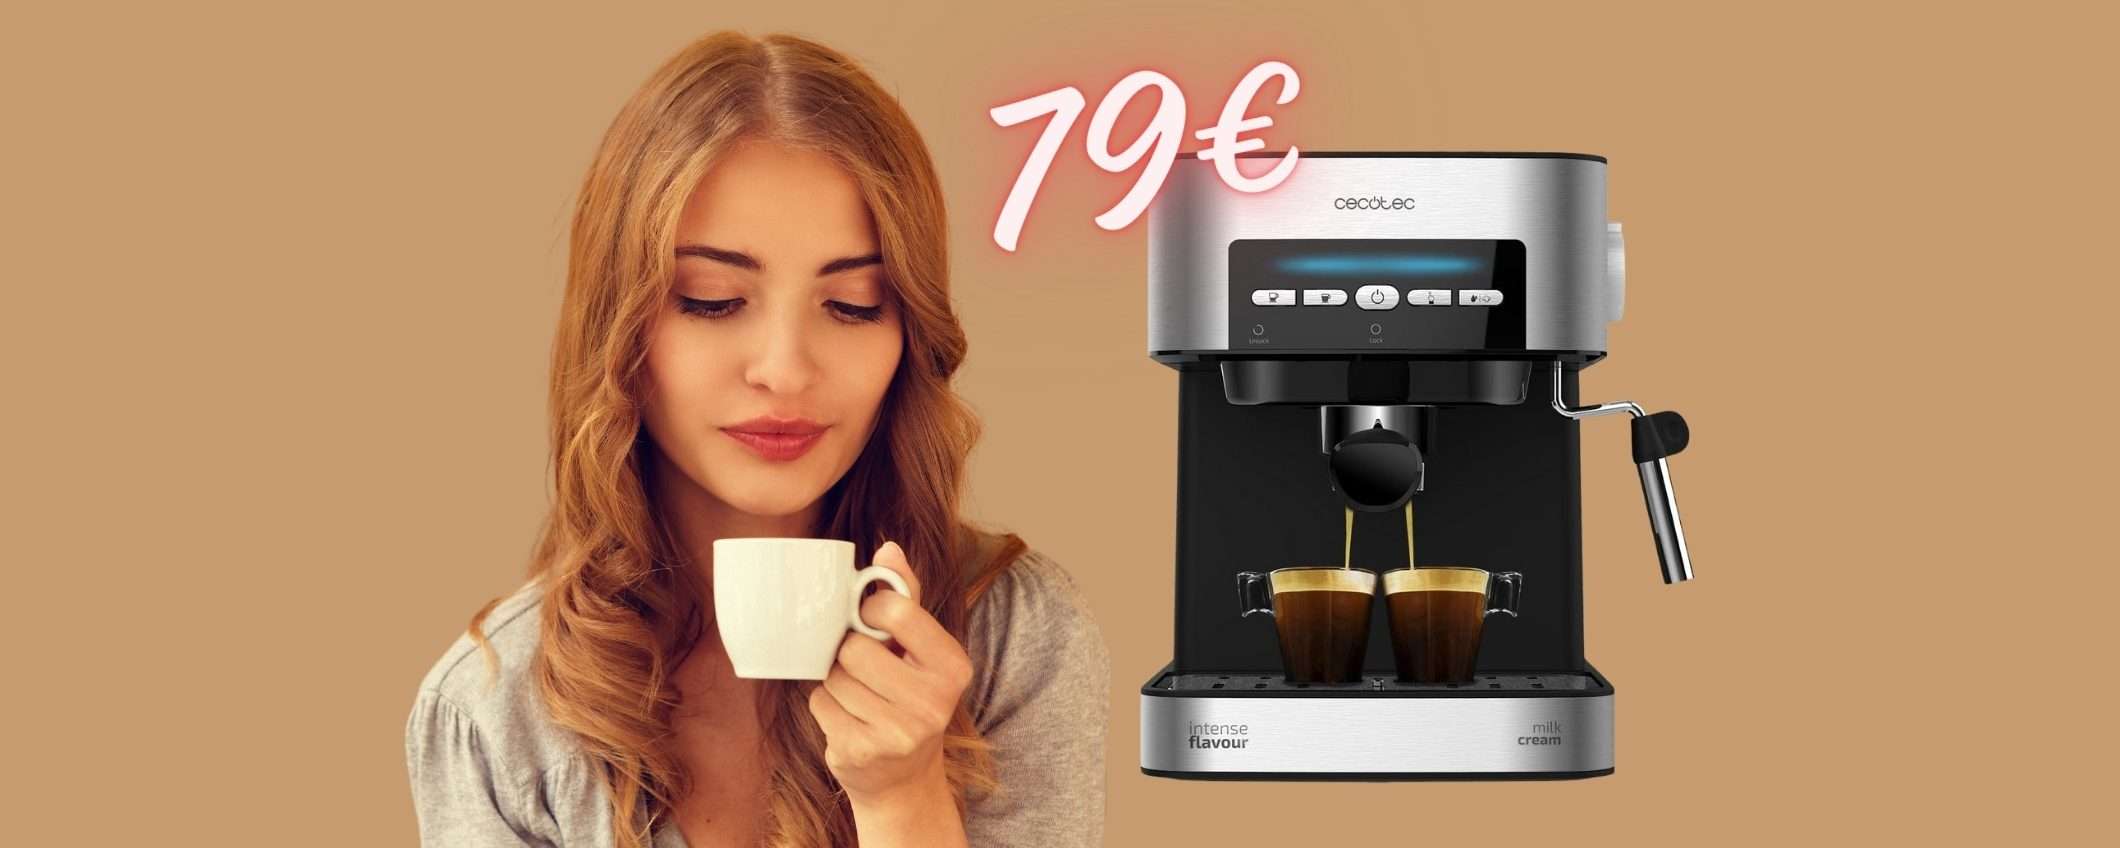 Macchina per espresso: il caffè come al bar quando vuoi a SOLI 79€